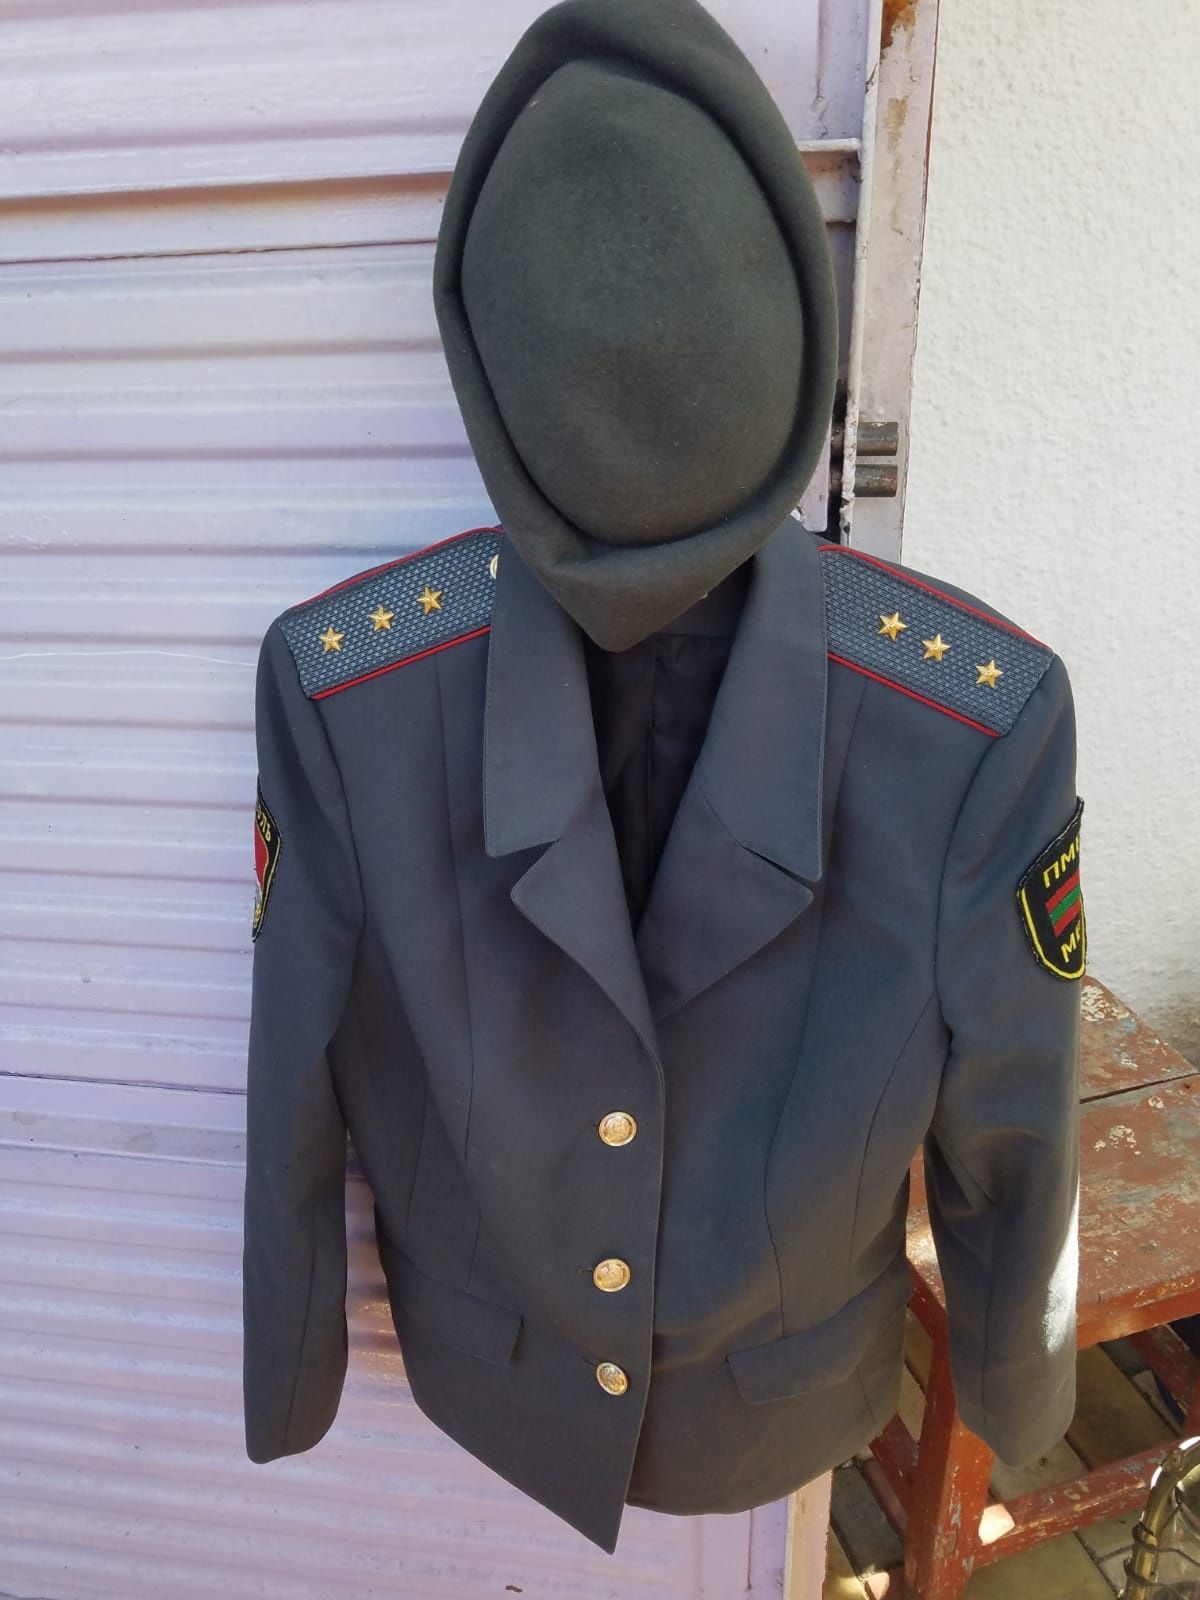 Uniforma damă poliția sovietică URSS și caciula